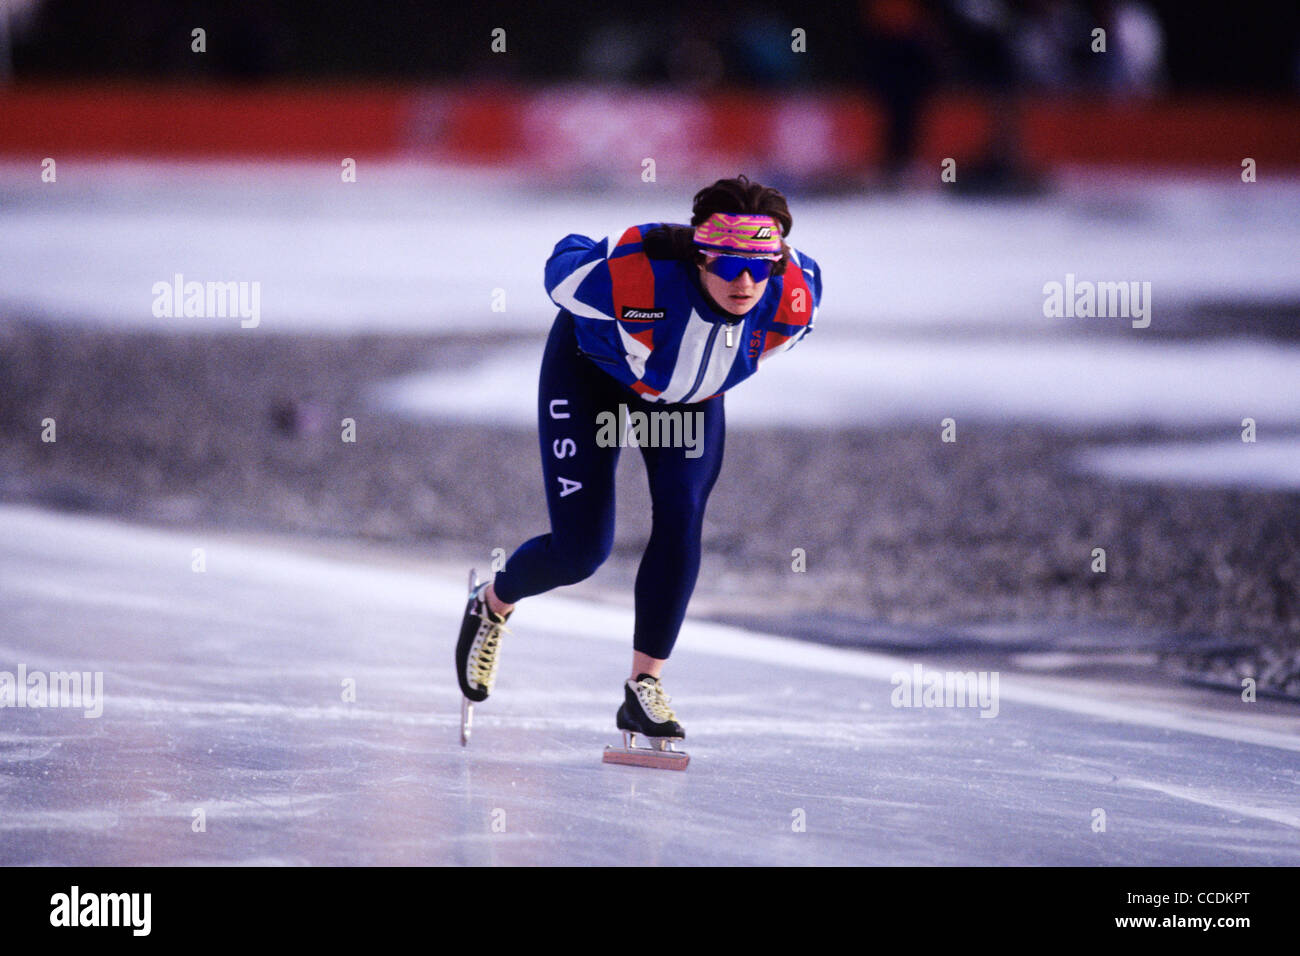 Bonnie BLAIR USA 1000m,médaille d'or aux Jeux Olympiques d'hiver 1992 Albertville France Banque D'Images